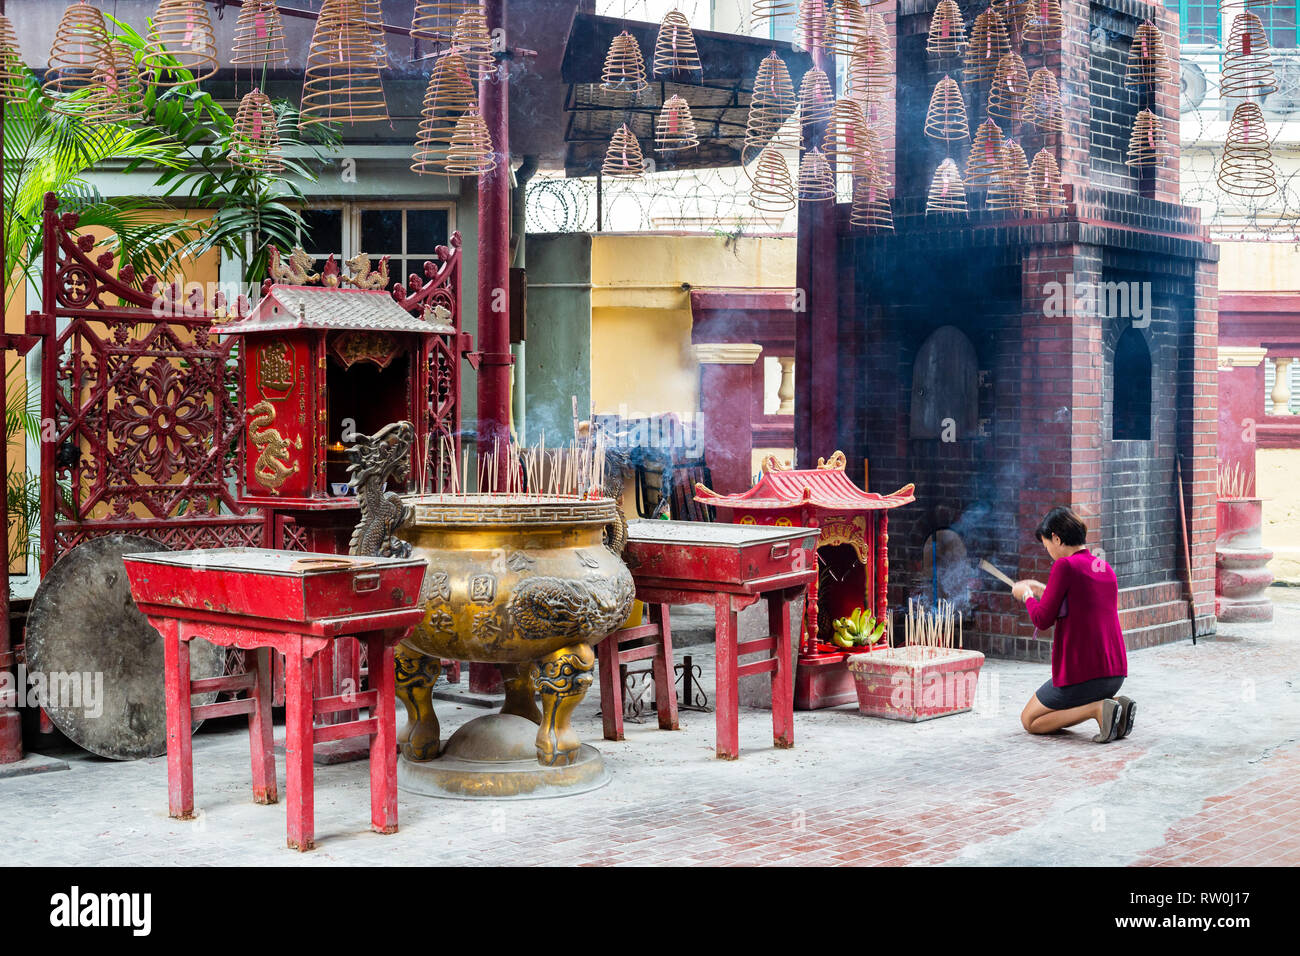 Peccato Sze Si Ya Tempio Taoista, Chinatown, Kuala Lumpur, Malesia. Adoratore inginocchiato con Joss (incenso) si inceppa nella parte anteriore del santuario. Foto Stock